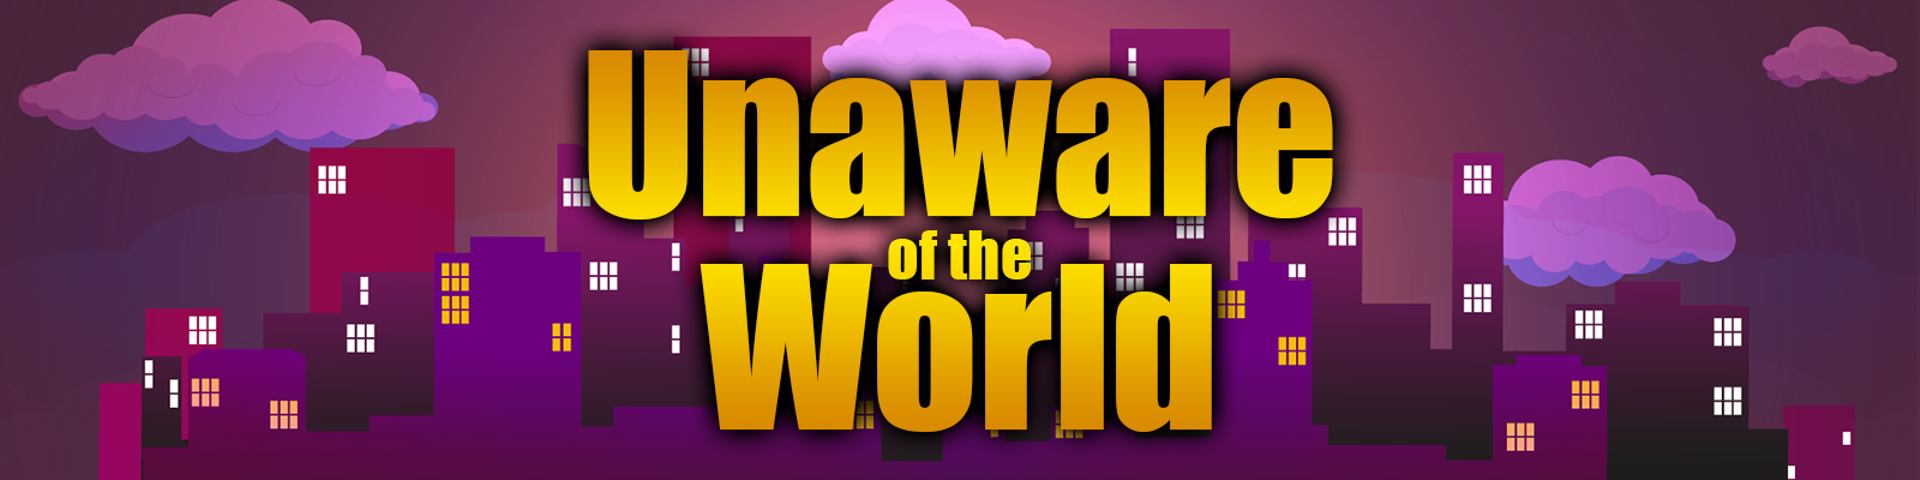 Unaware Of The World - Version 0.09 EX by Unaware Team Win32/Win64